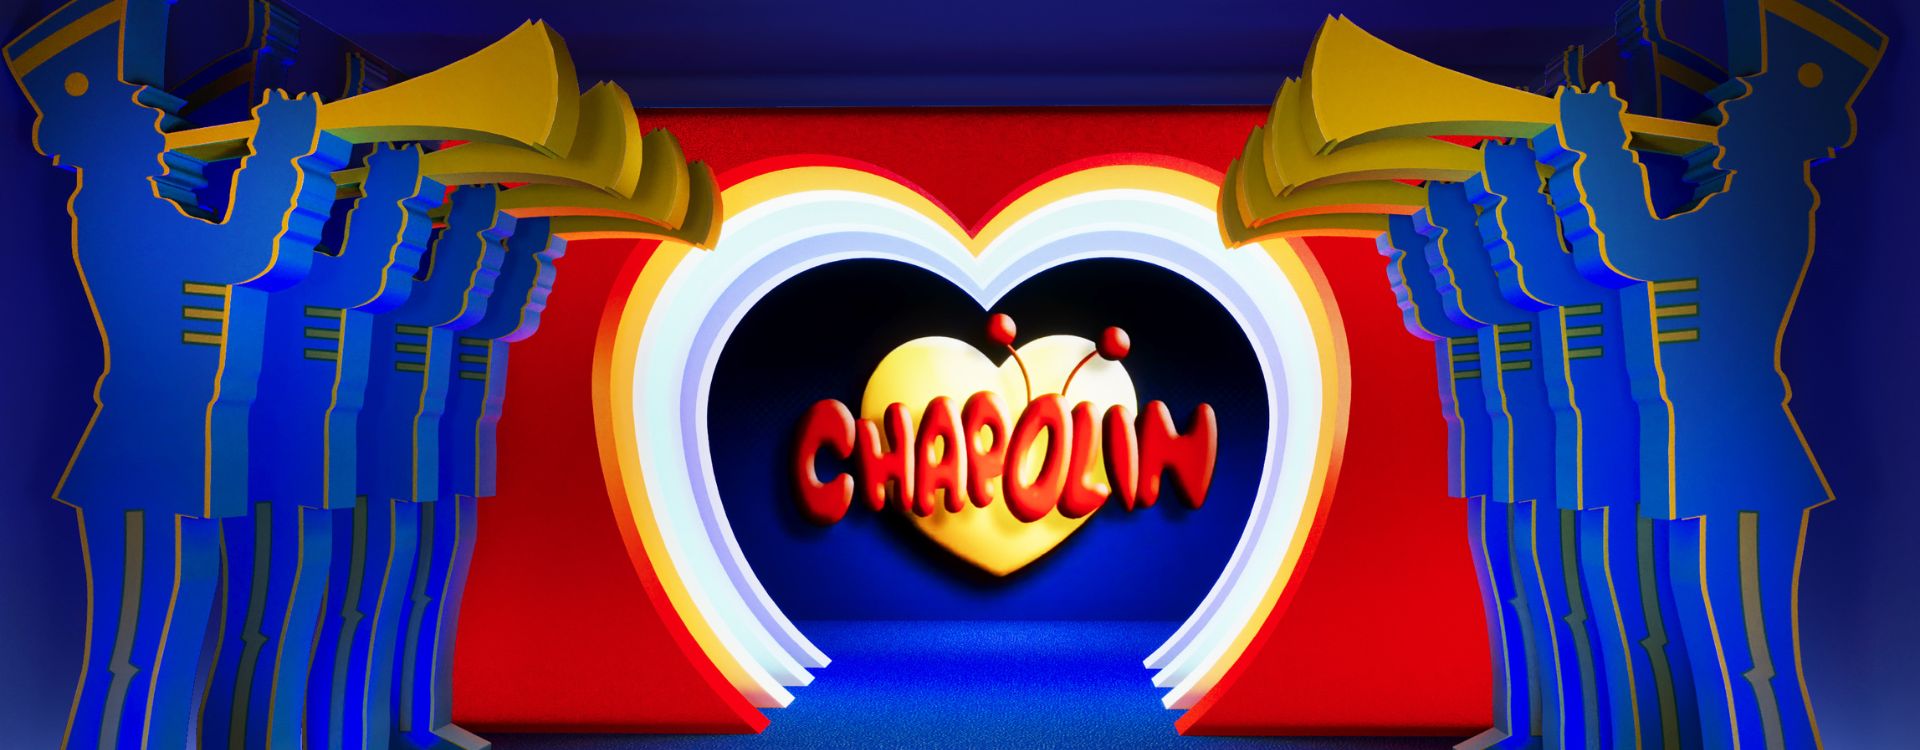 Chapolin Colorado ganha desenho na TV mexicana neste domingo - Últimas  Notícias - UOL TV e Famosos